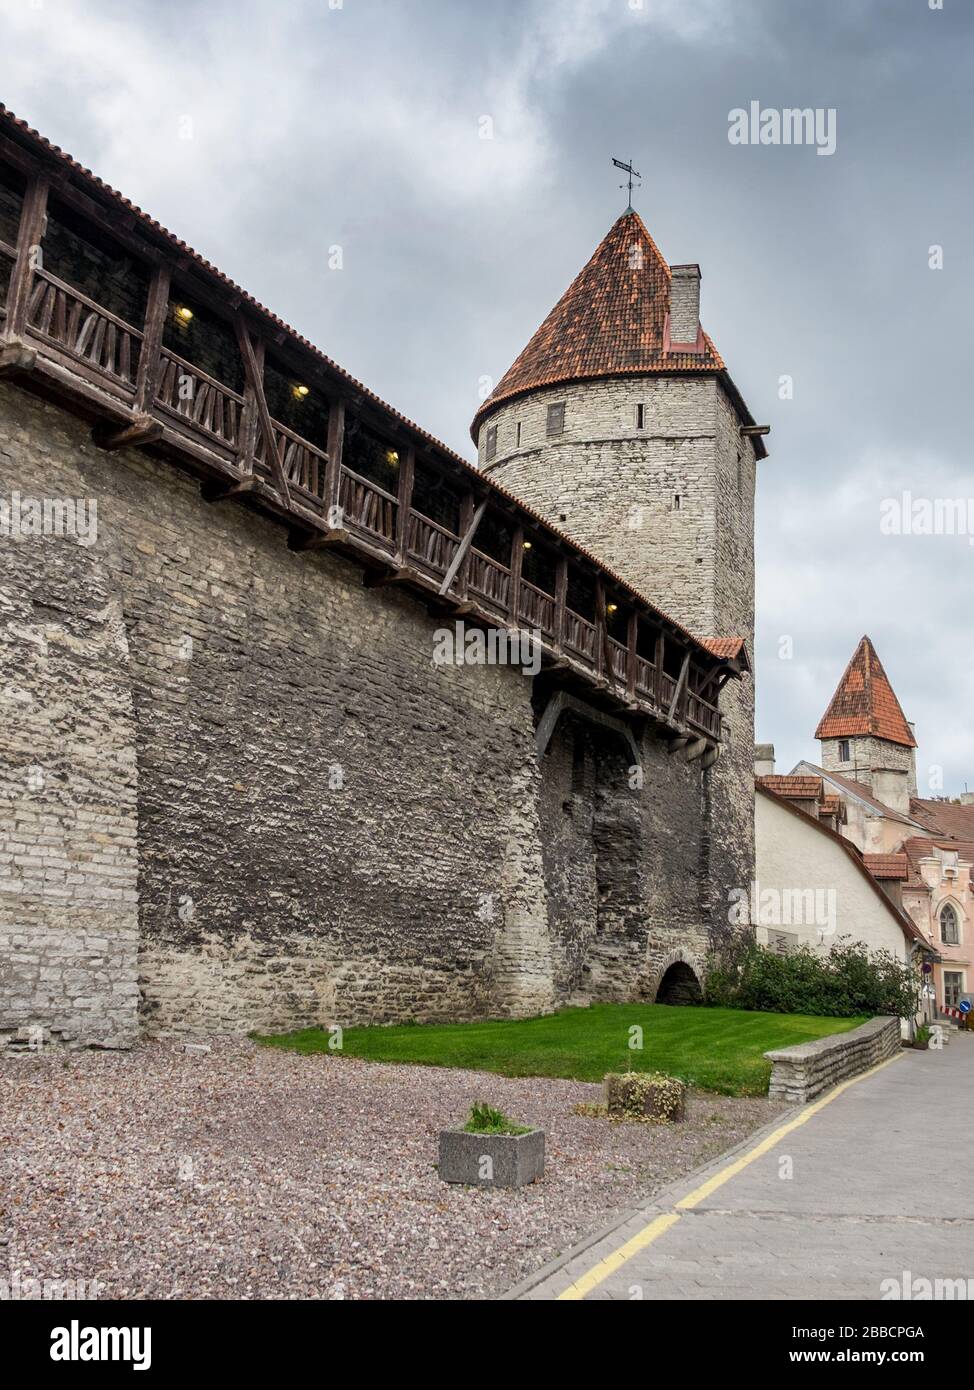 Vieille ville mur médiéval de fortification et tours de guet, Tallinn, Estonie Banque D'Images